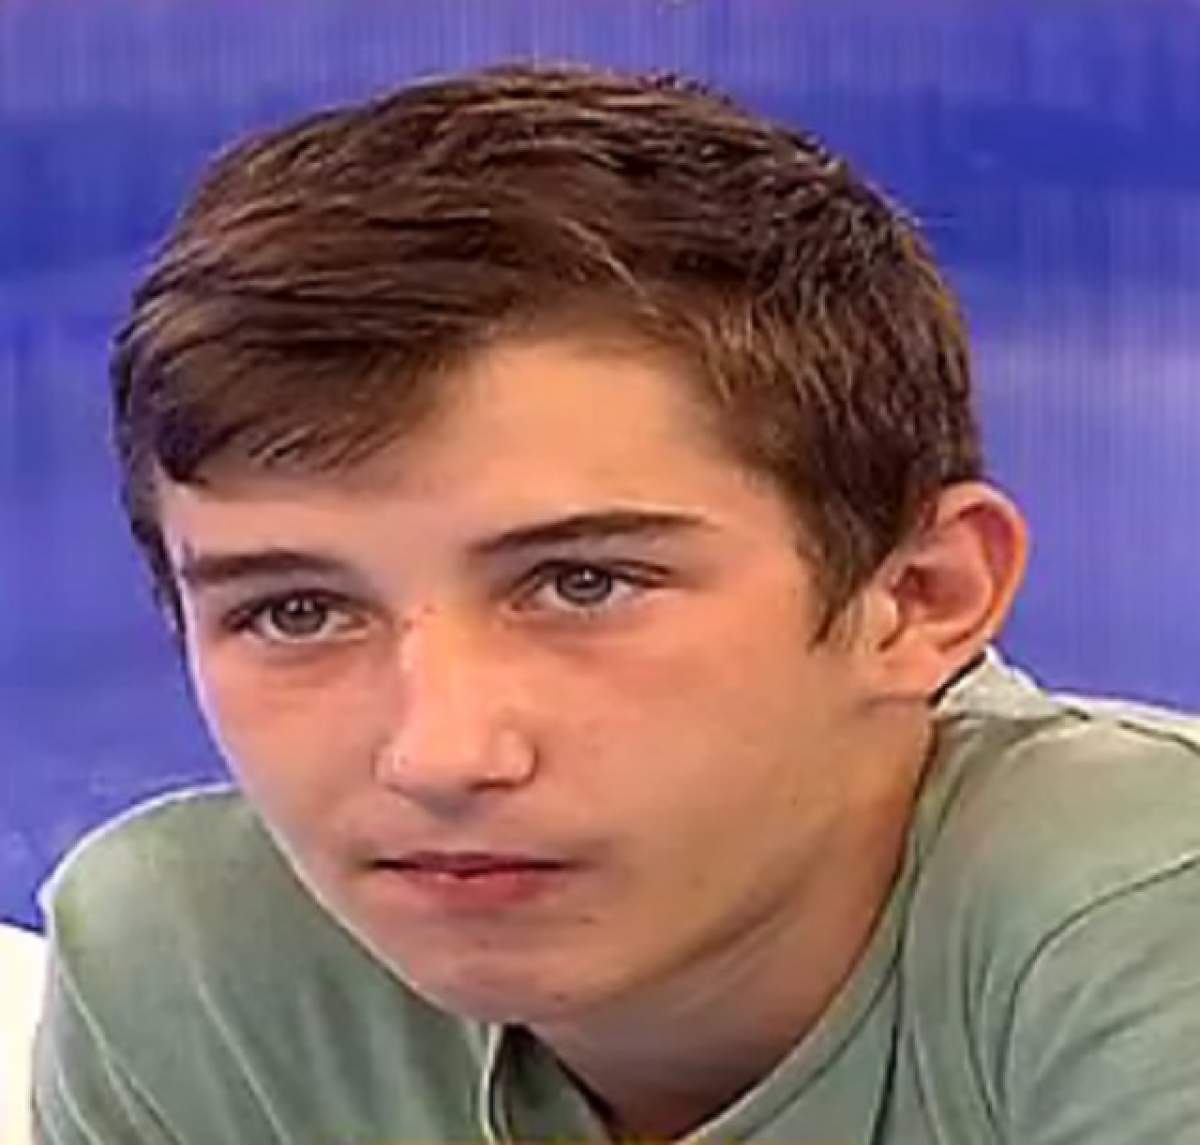 VIDEO /  Capcana adolescenţilor secolului XXI: drogurile! Luca, un tânăr de 16 ani, îşi strigă neputinţa: "Am făcut supradoză, am intrat în comă!"